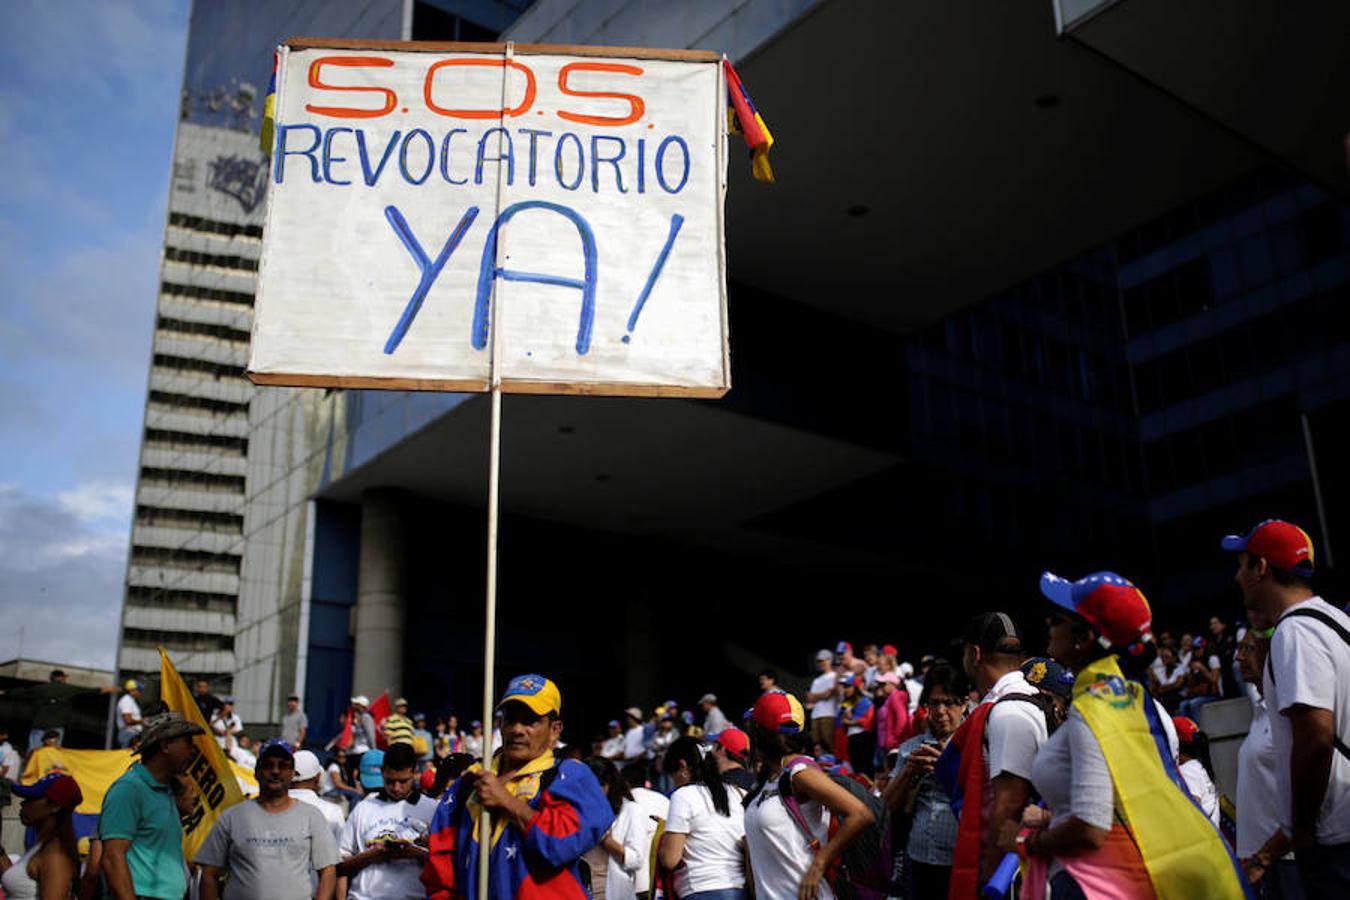 Un venezolano se suma a las demandas para acelerar el revocatorio, que el presidente Maduro está intentando aplazar